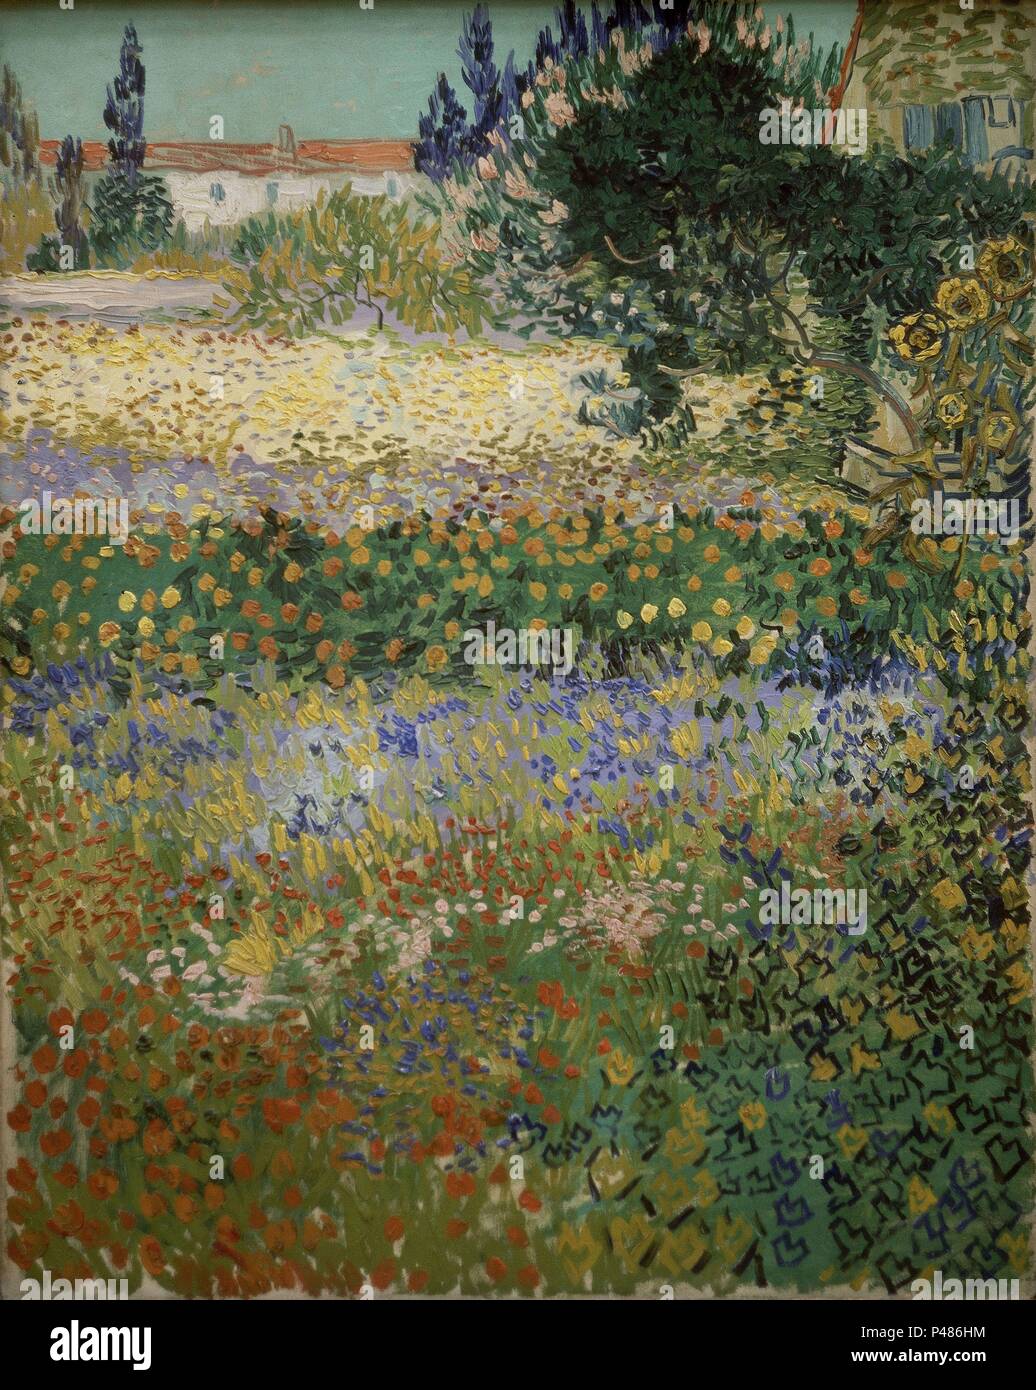 Garten in voller Blüte, Arles - 1888 - Öl auf Leinwand - 92 x 73 cm. Autor: Vincent van Gogh (1853-1890). Lage: Metropolitan Museum of Art, New York. Auch als: JARDIN, ARLES bekannt. Stockfoto